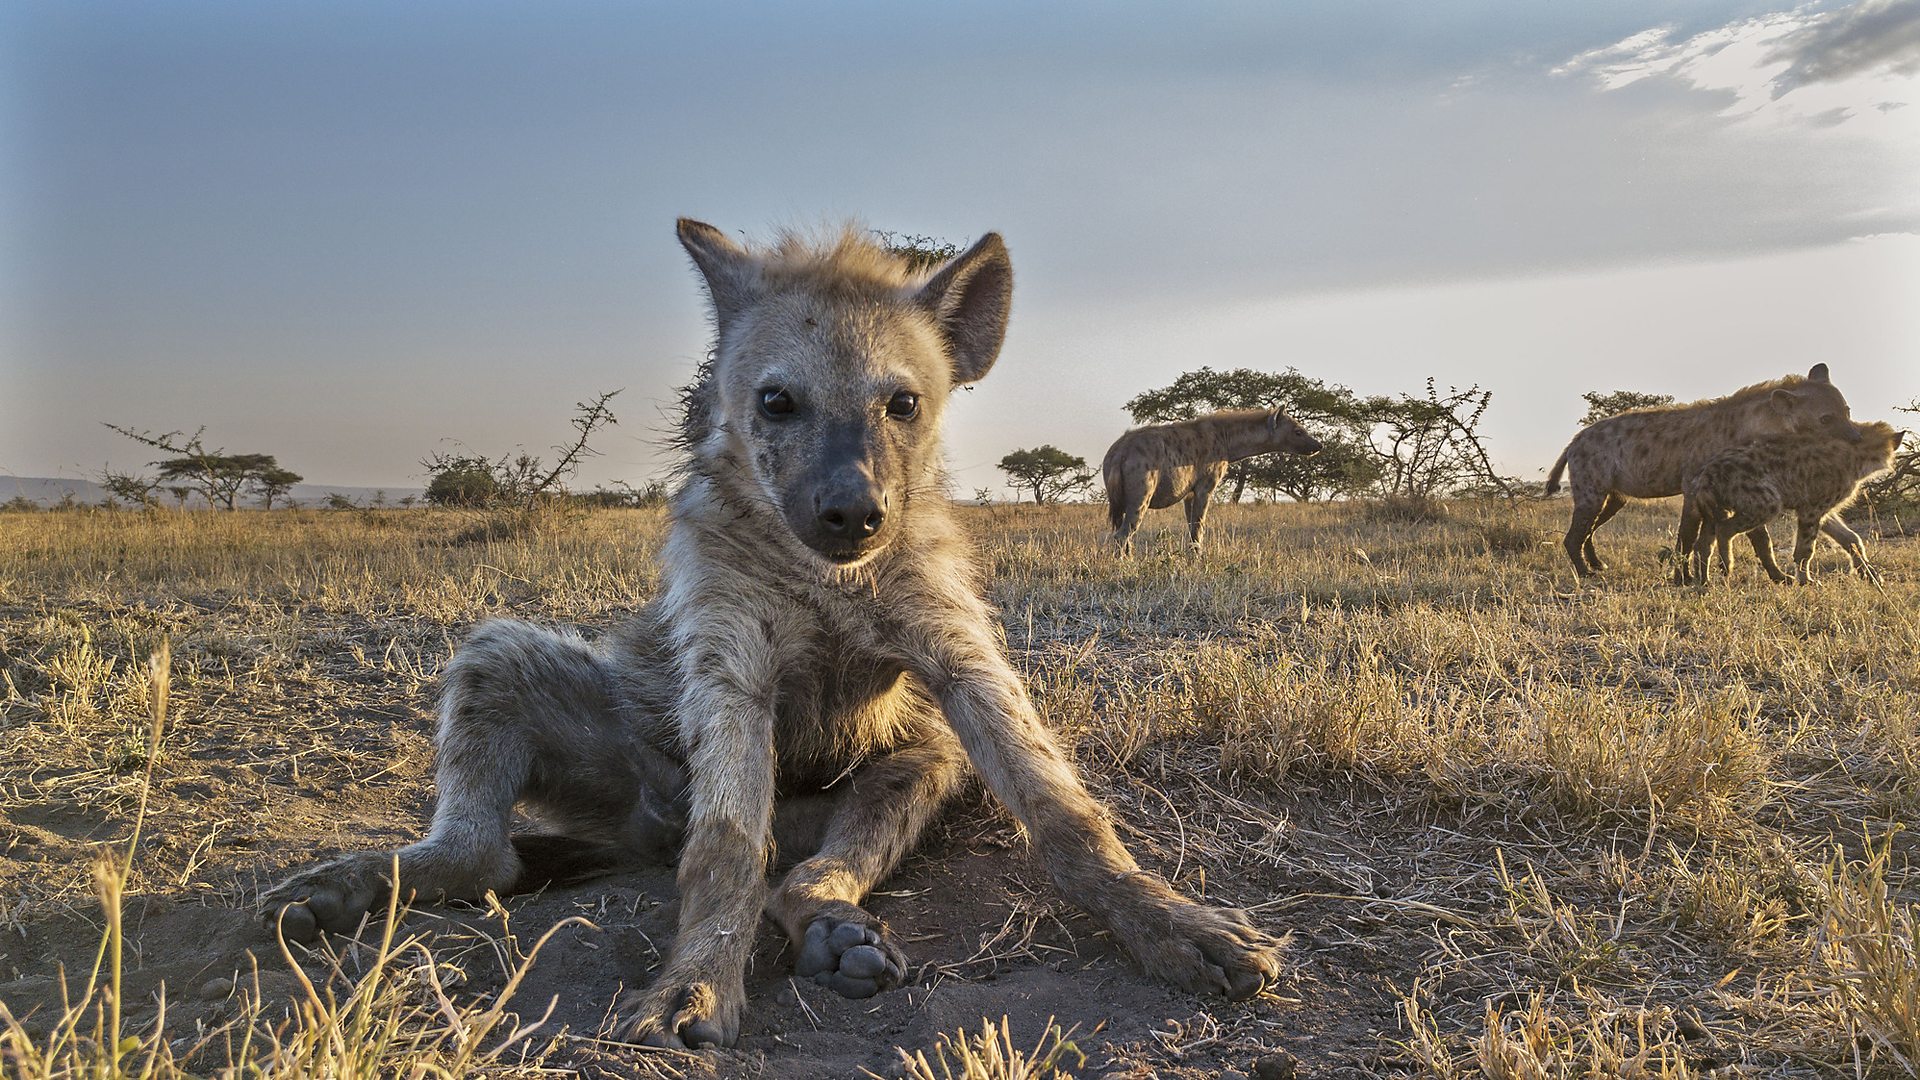 BBC One - Serengeti - How We Made Serengeti